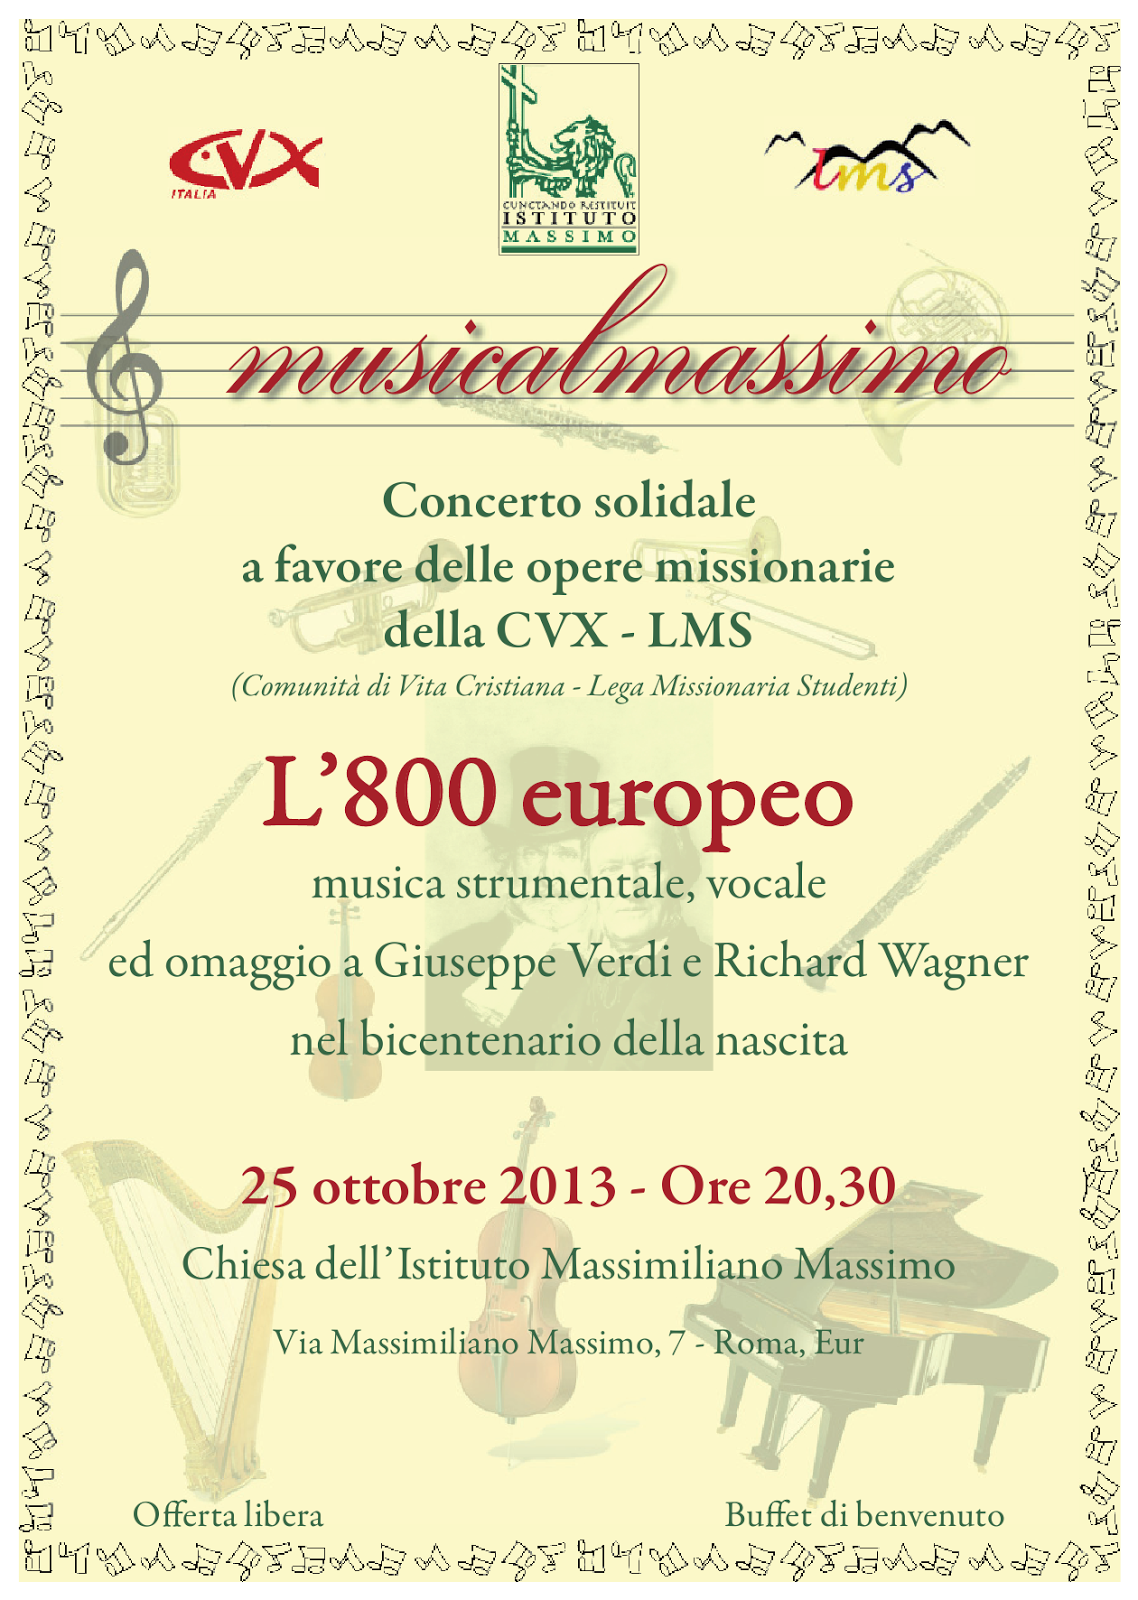 Eventi Culturali a Roma ottobre novembre 2013